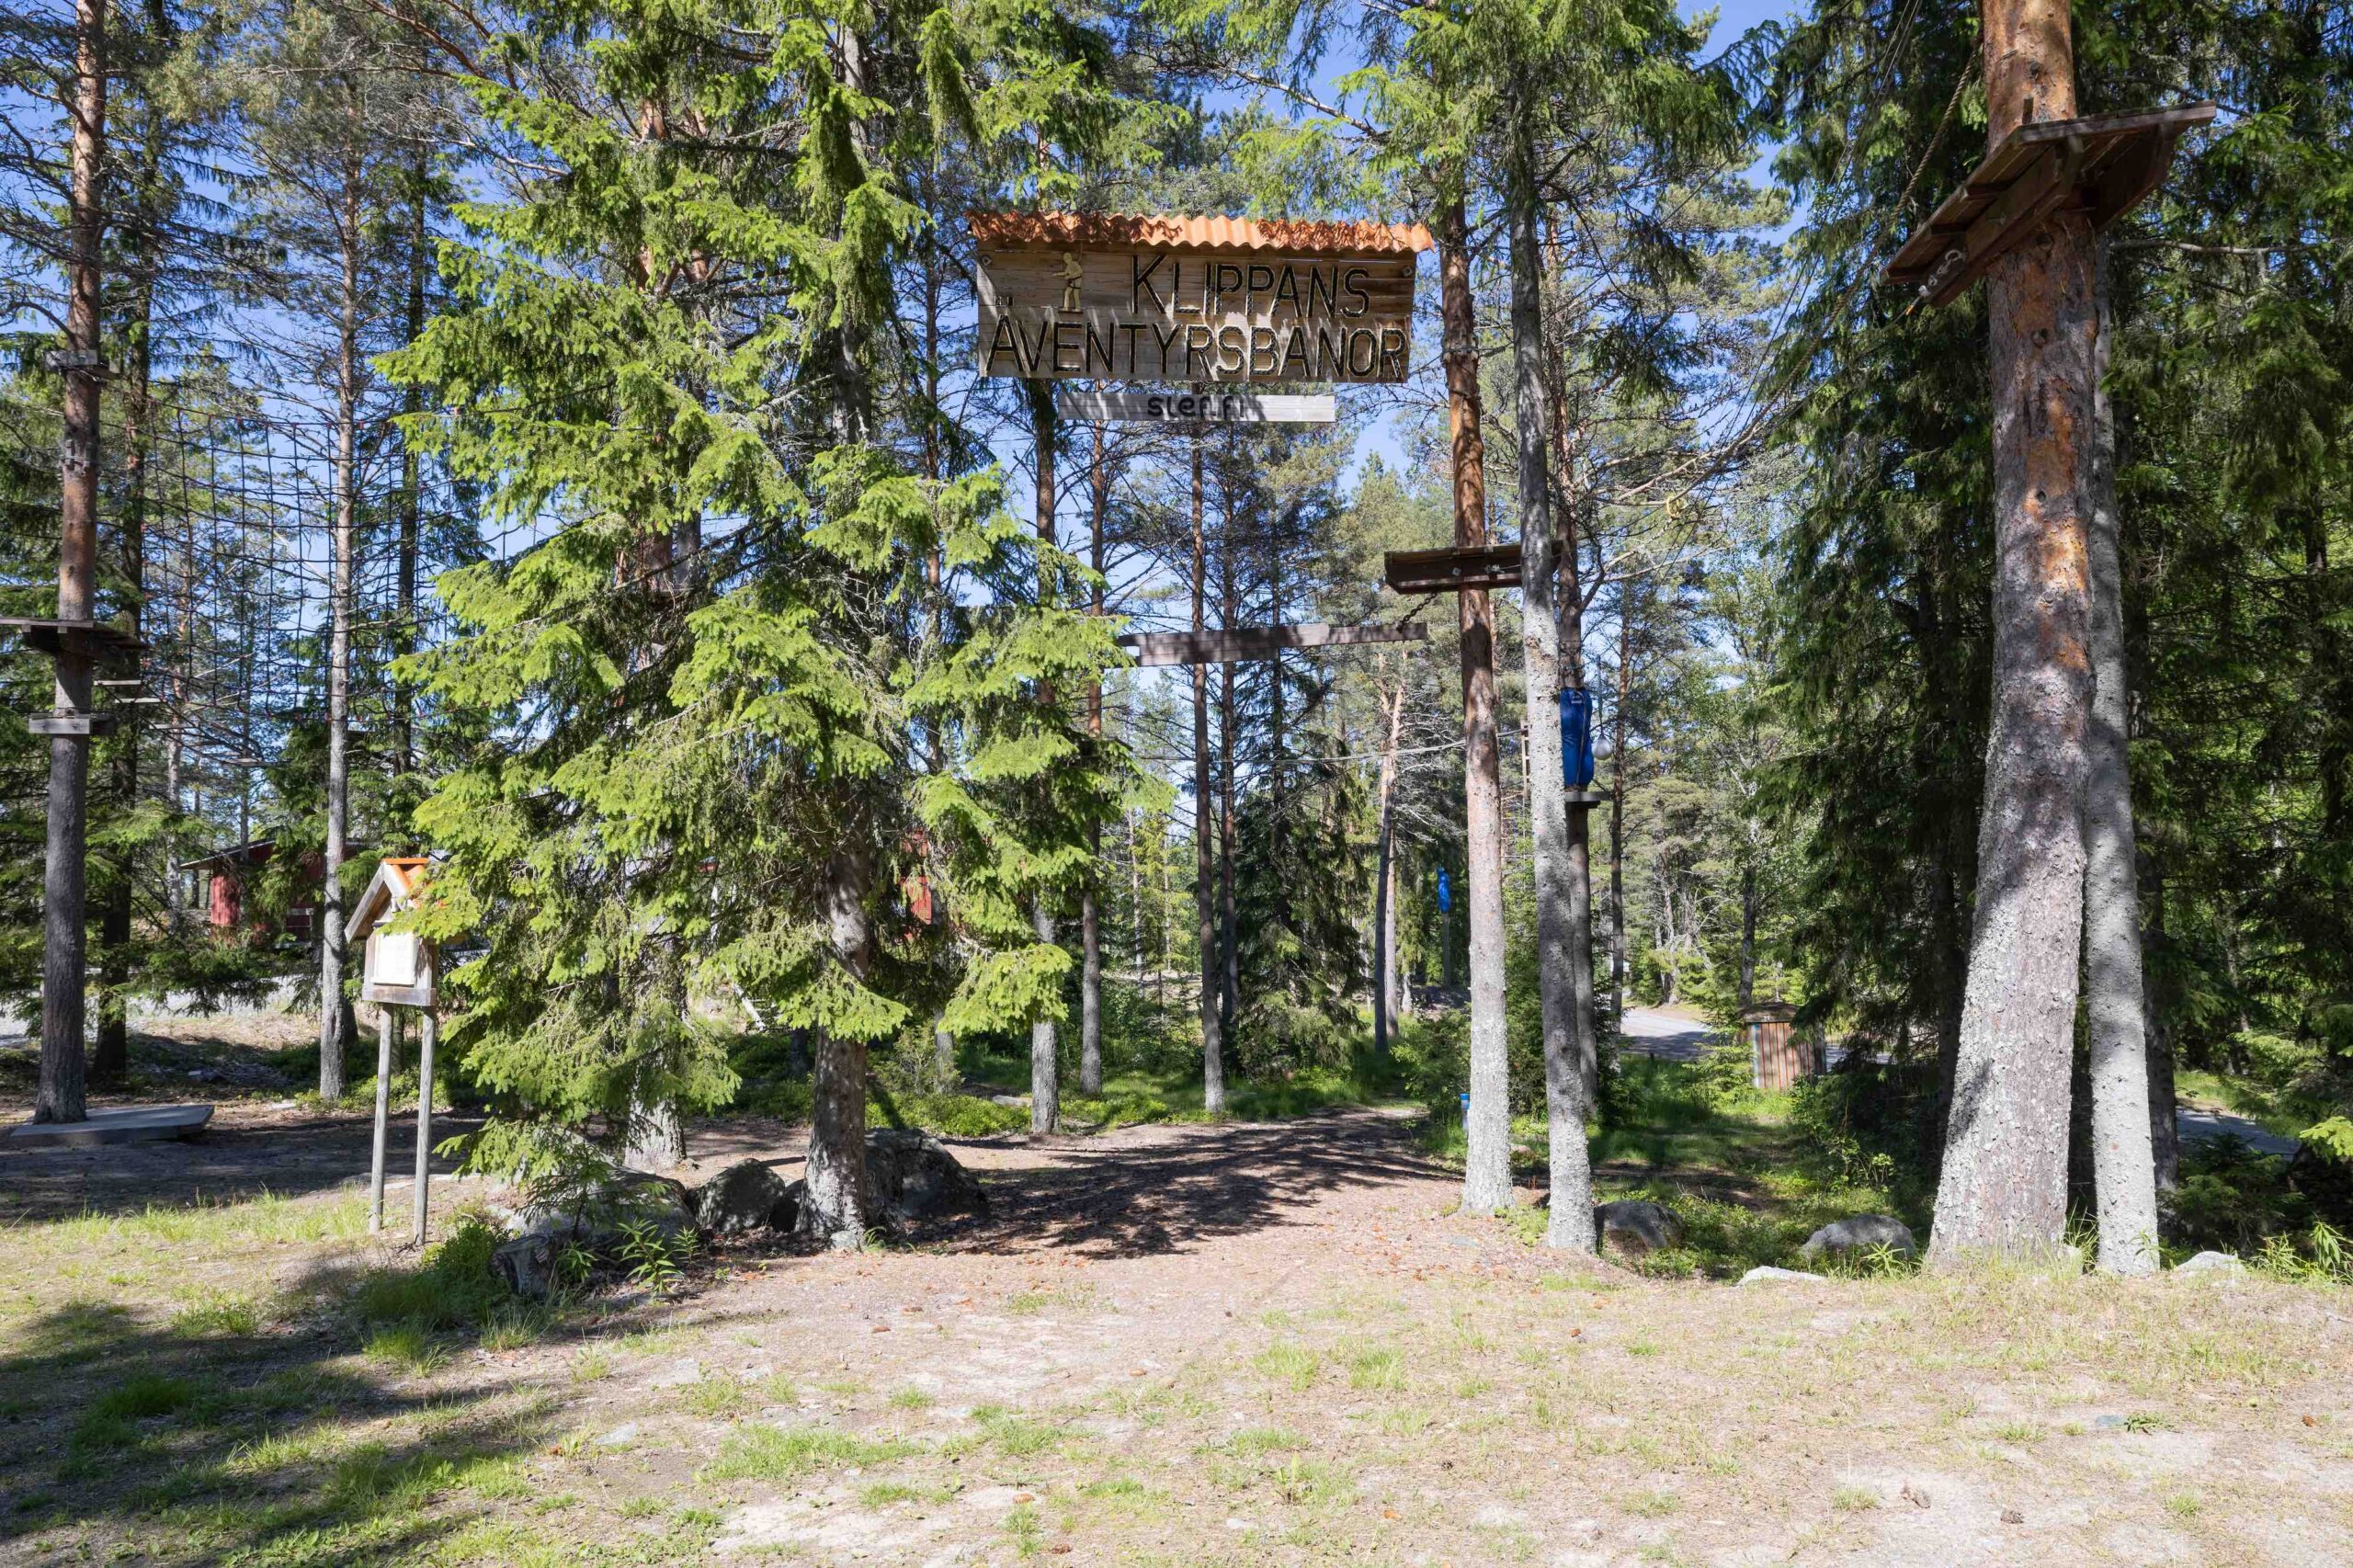 Klippans äventyrsbanor – ett uppskattat inslag på alla läger och evenemang.